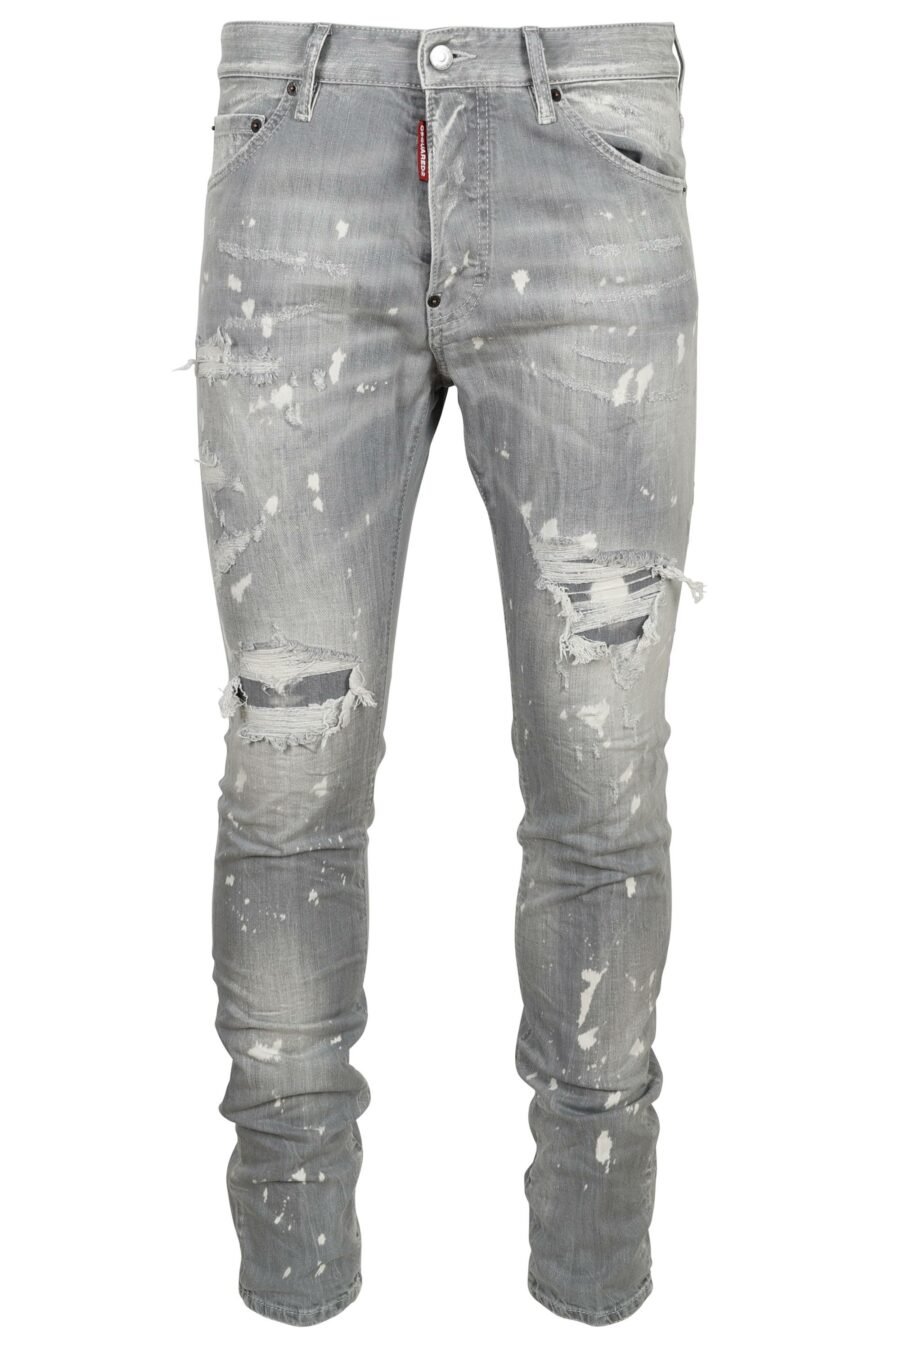 Pantalón vaquero gris "cool guy jean" con pintura blanca y rotos - 8054148474218